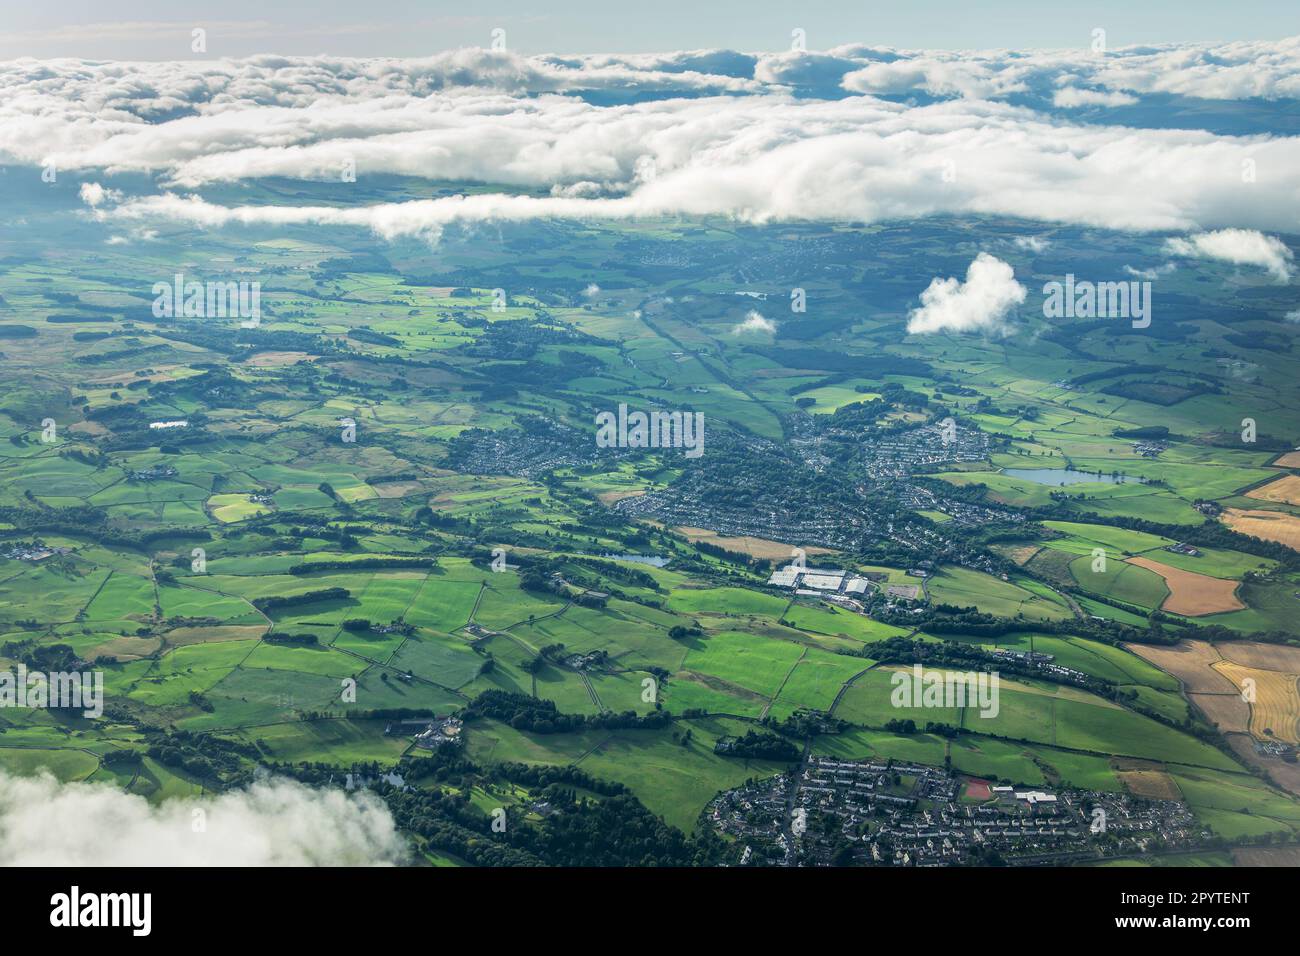 Luftaufnahme der Stadt Bridge of Veir, umgeben von grünen Feldern in der schottischen Landschaft in der Nähe von Glasgow, Central Lowlands of Scotland, Großbritannien Stockfoto